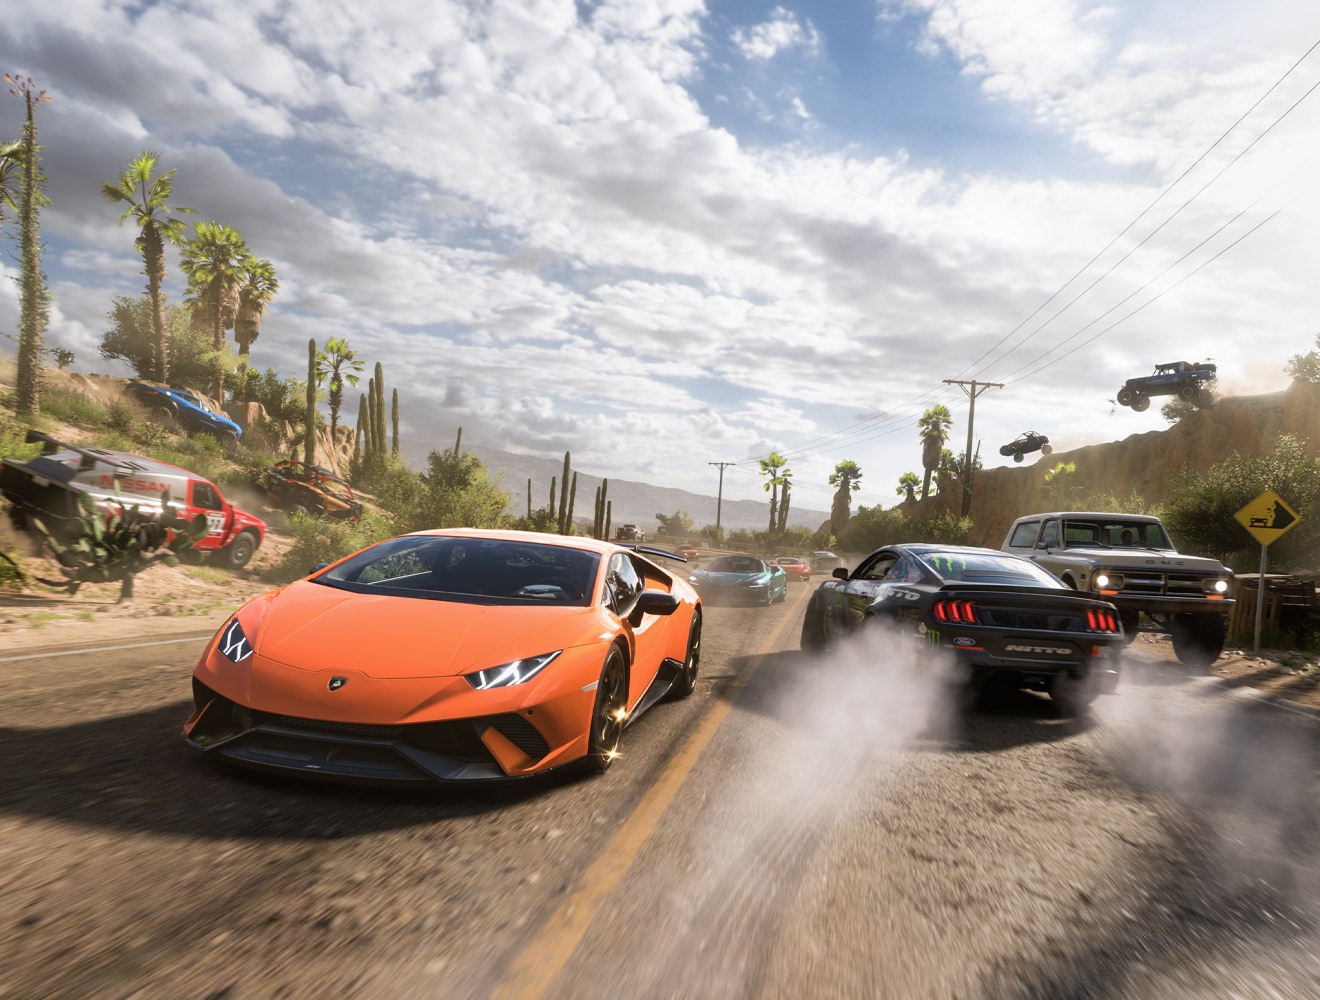 Sports cars in "Forza Horizon 5"